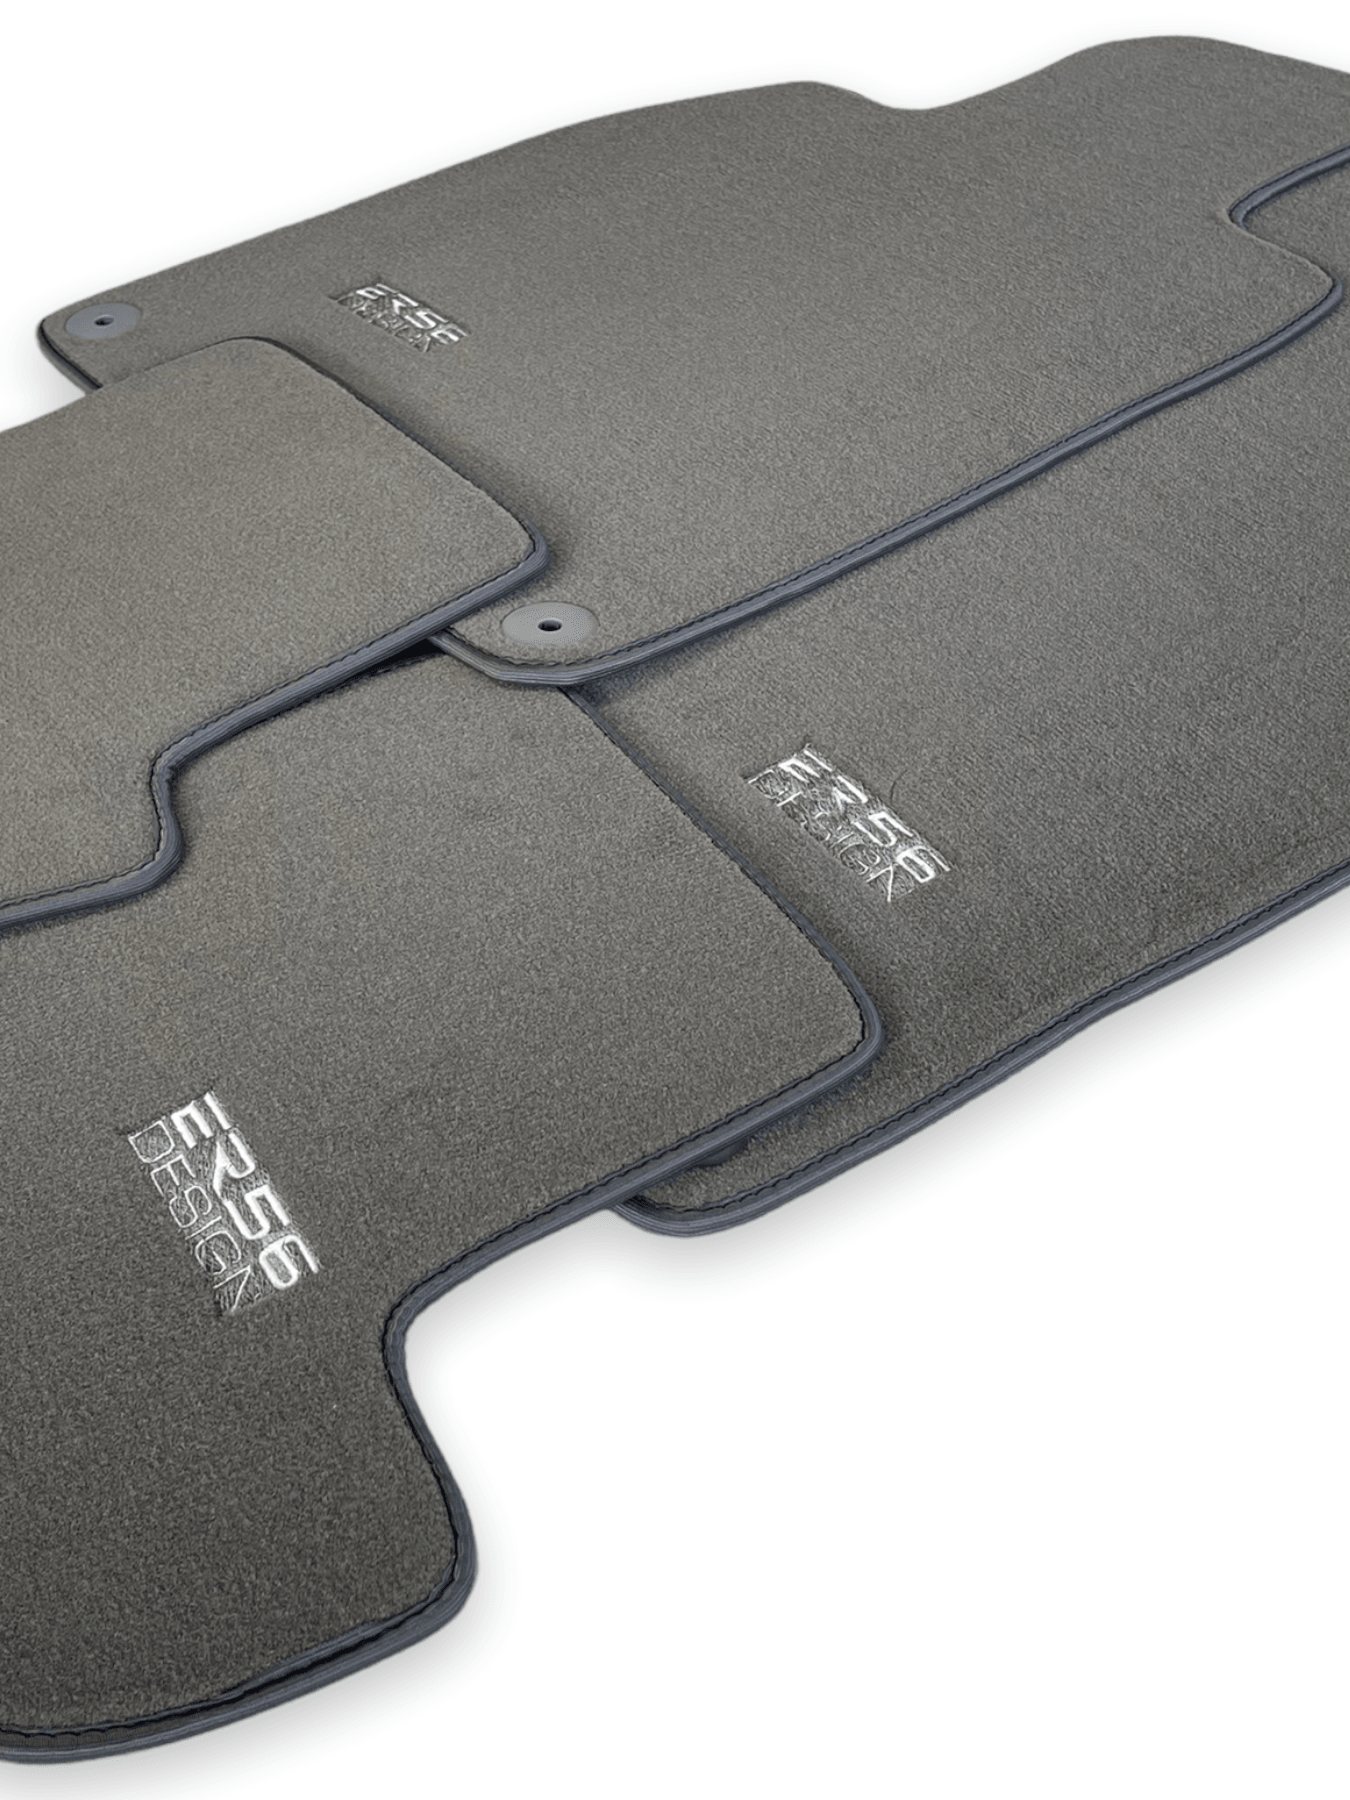 Gray Floor Mats for Porsche Cayenne (2010-2018) | ER56 Design - AutoWin